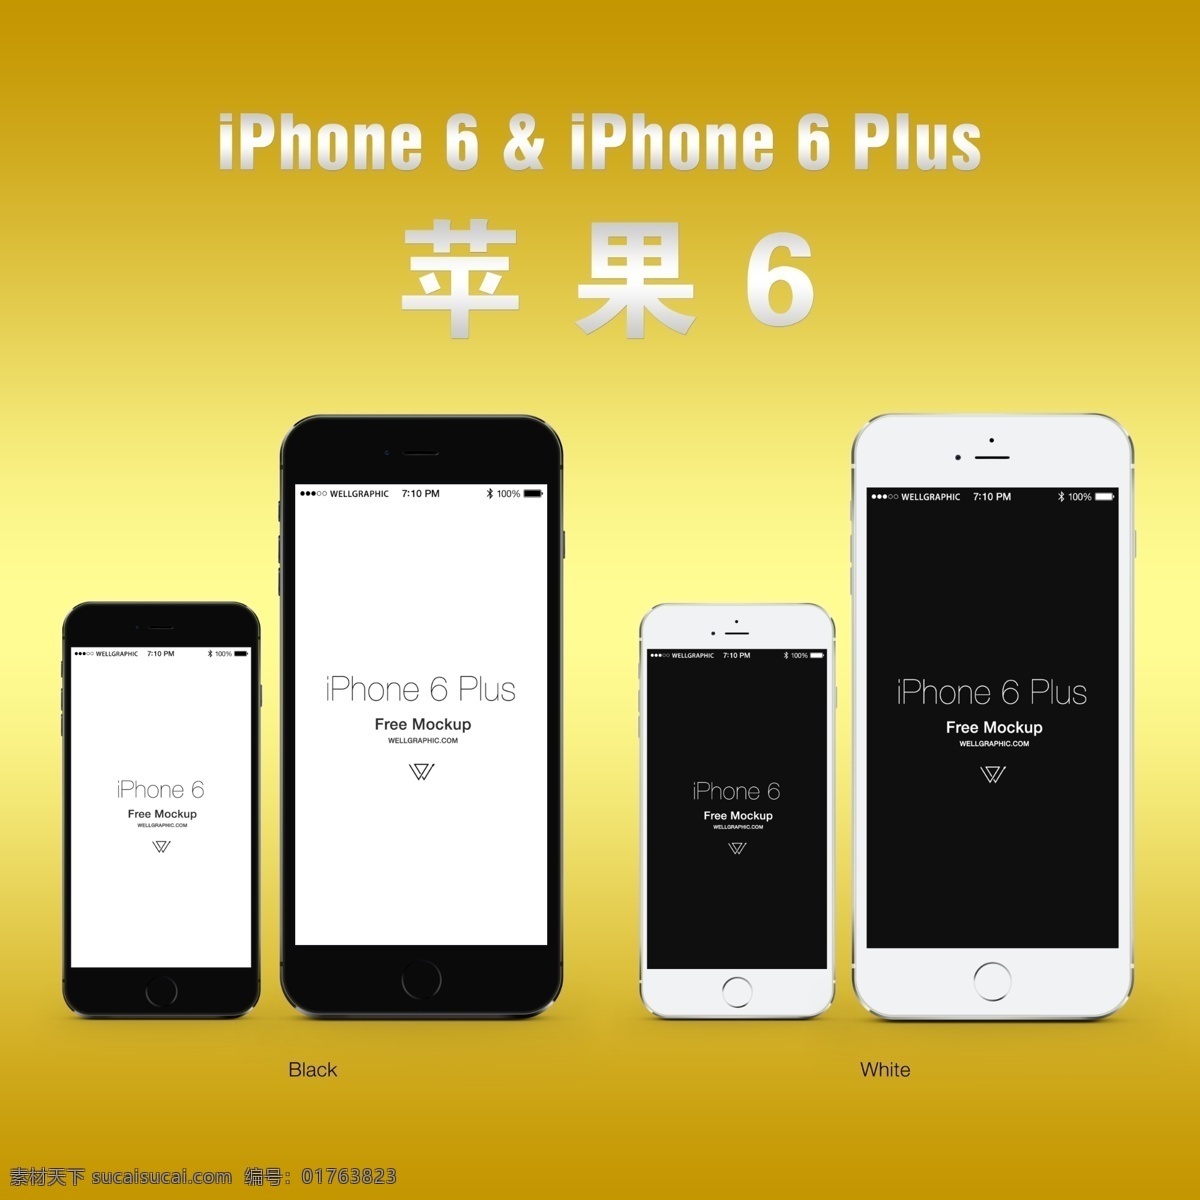 苹果 大屏 iphone6 苹果6 手机 高清 分层 高档 新款 美国 科技 数码 设计广告 信息 热卖 广告图 现代科技 数码产品 黄色